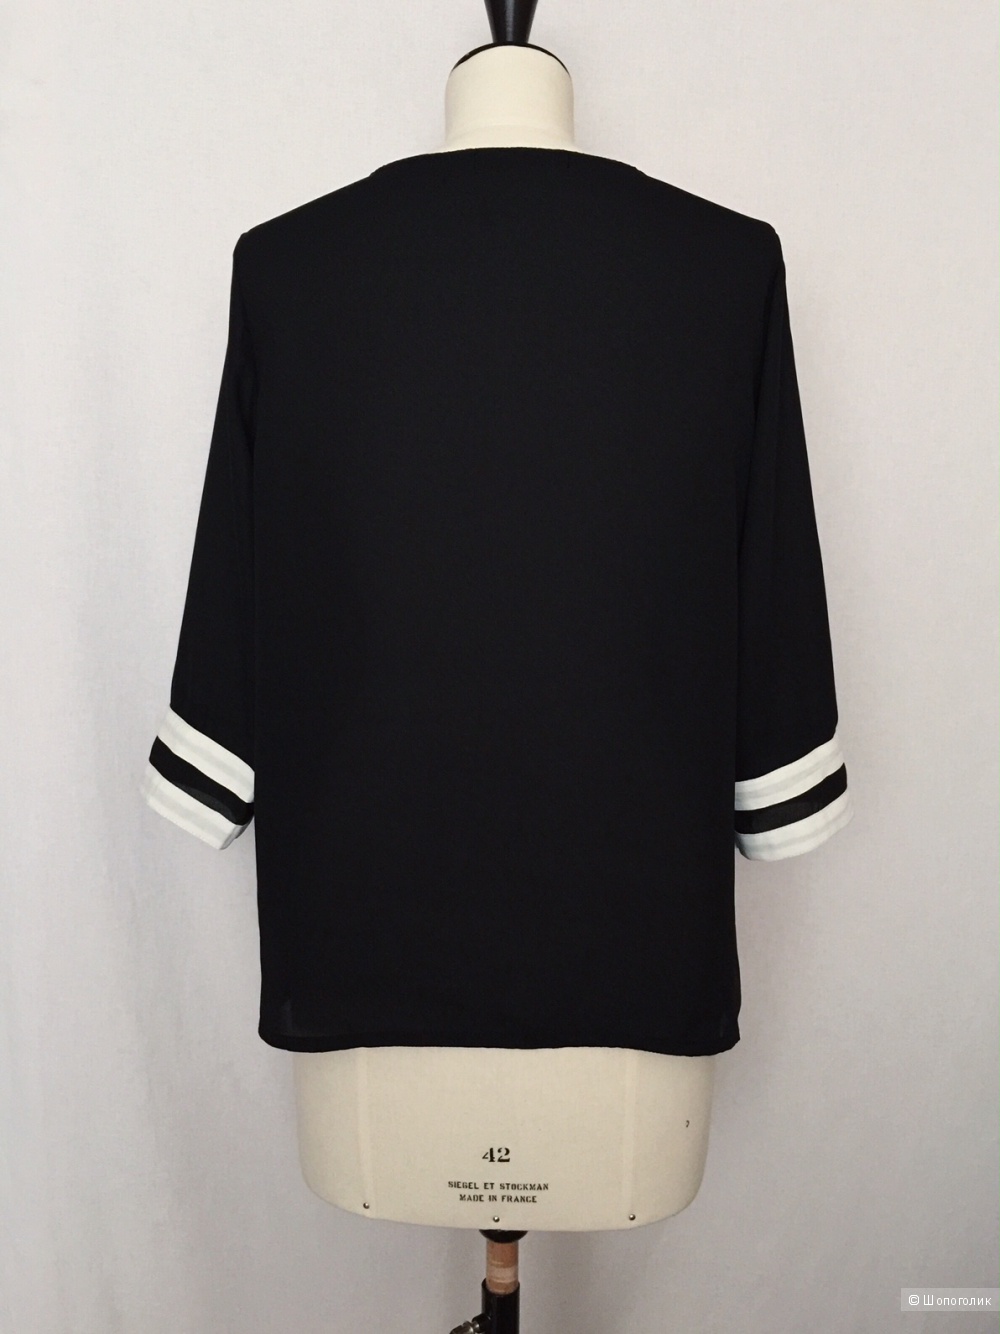 Шикарная женская блуза с глубоким декольте марки ZANZEA  размер 48-50 Новый!